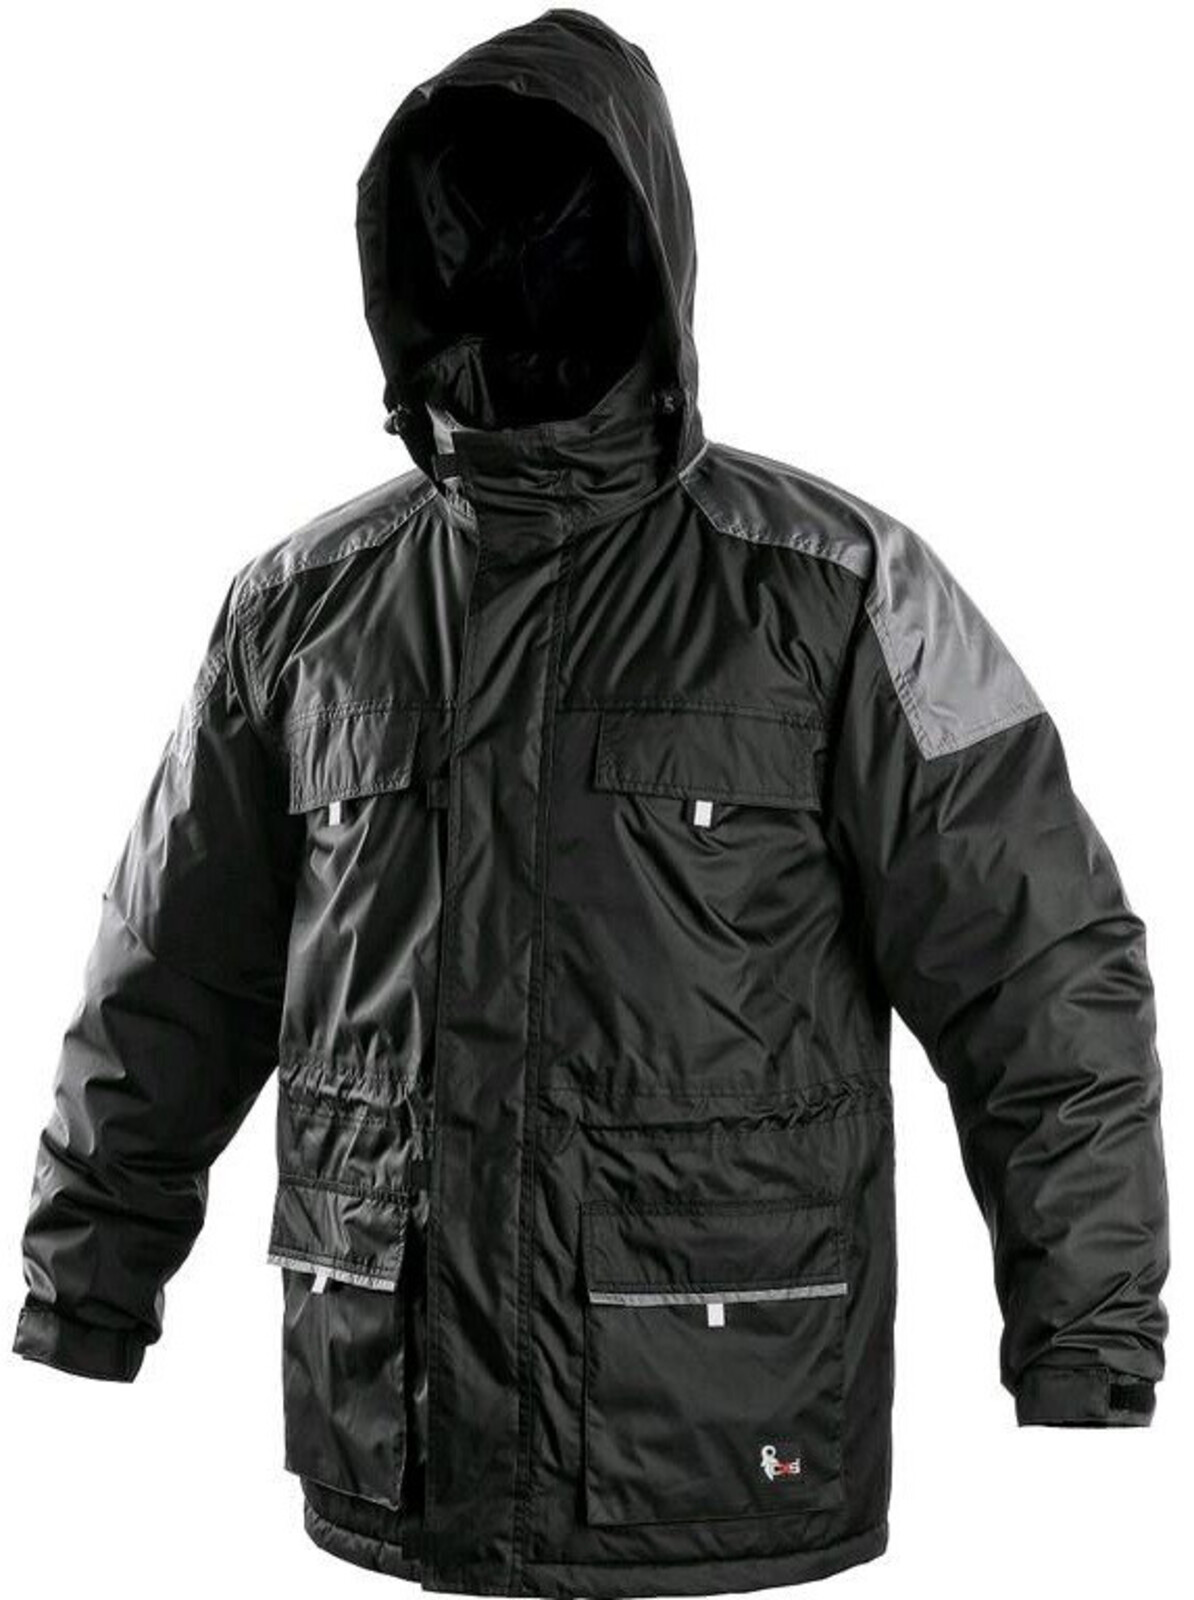 Pánska zimná bunda CXS Fremont - veľkosť: L, farba: čierna/sivá